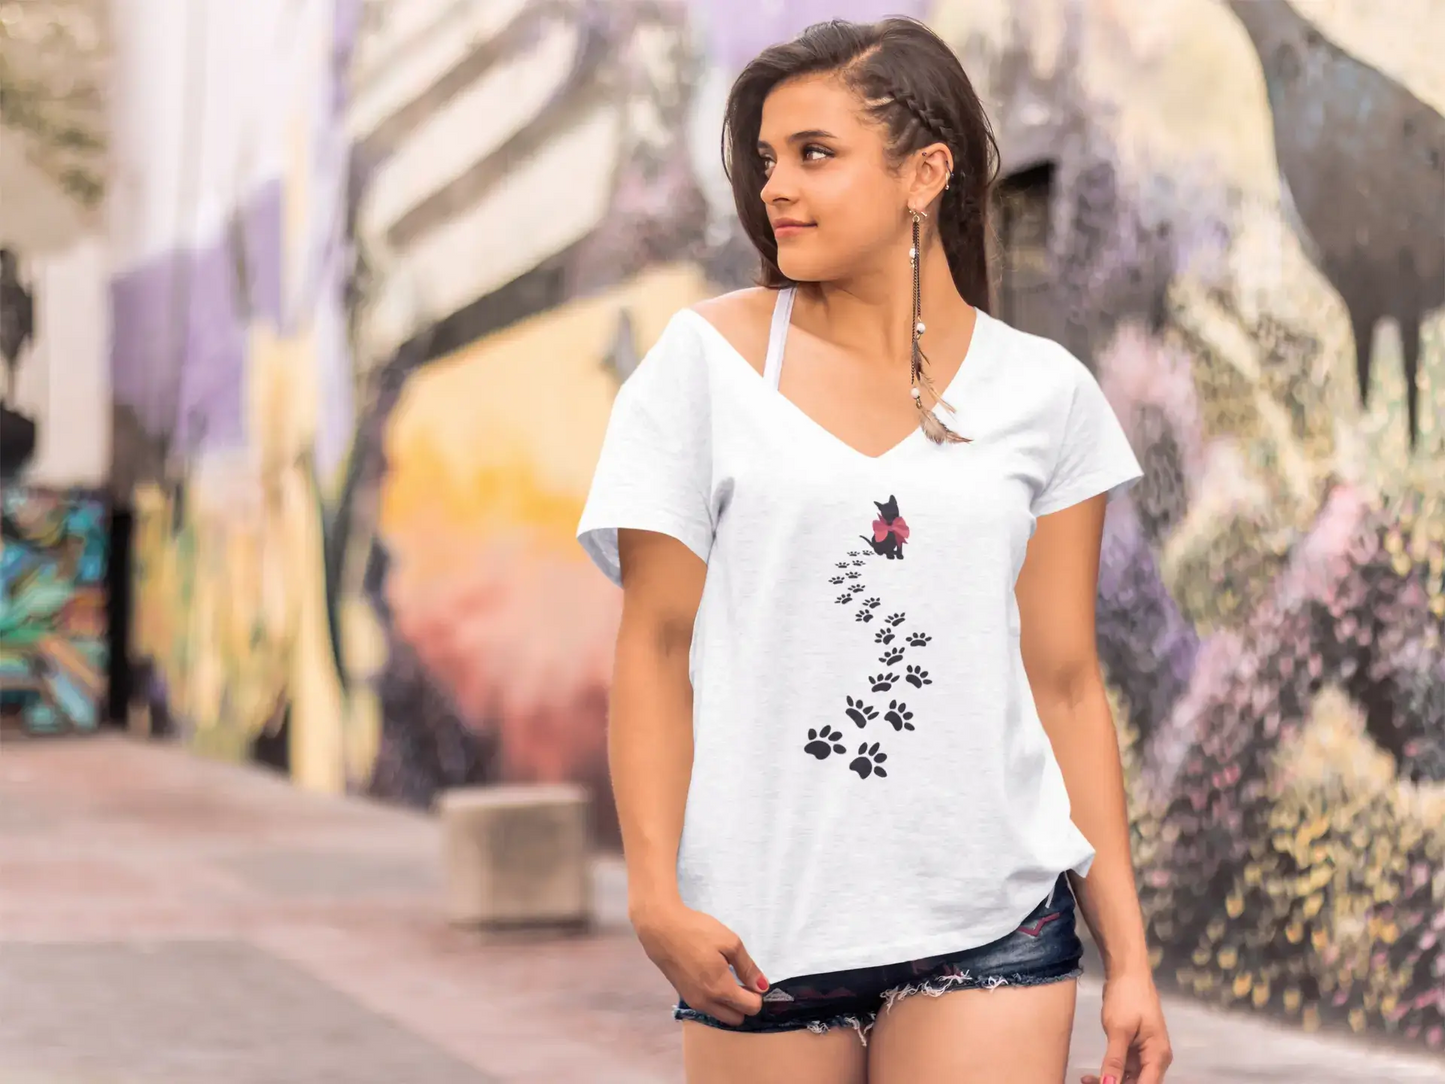 ULTRABASIC Women's T-Shirt Cat Footprints Paw - Kitten Lover Tee Shirt